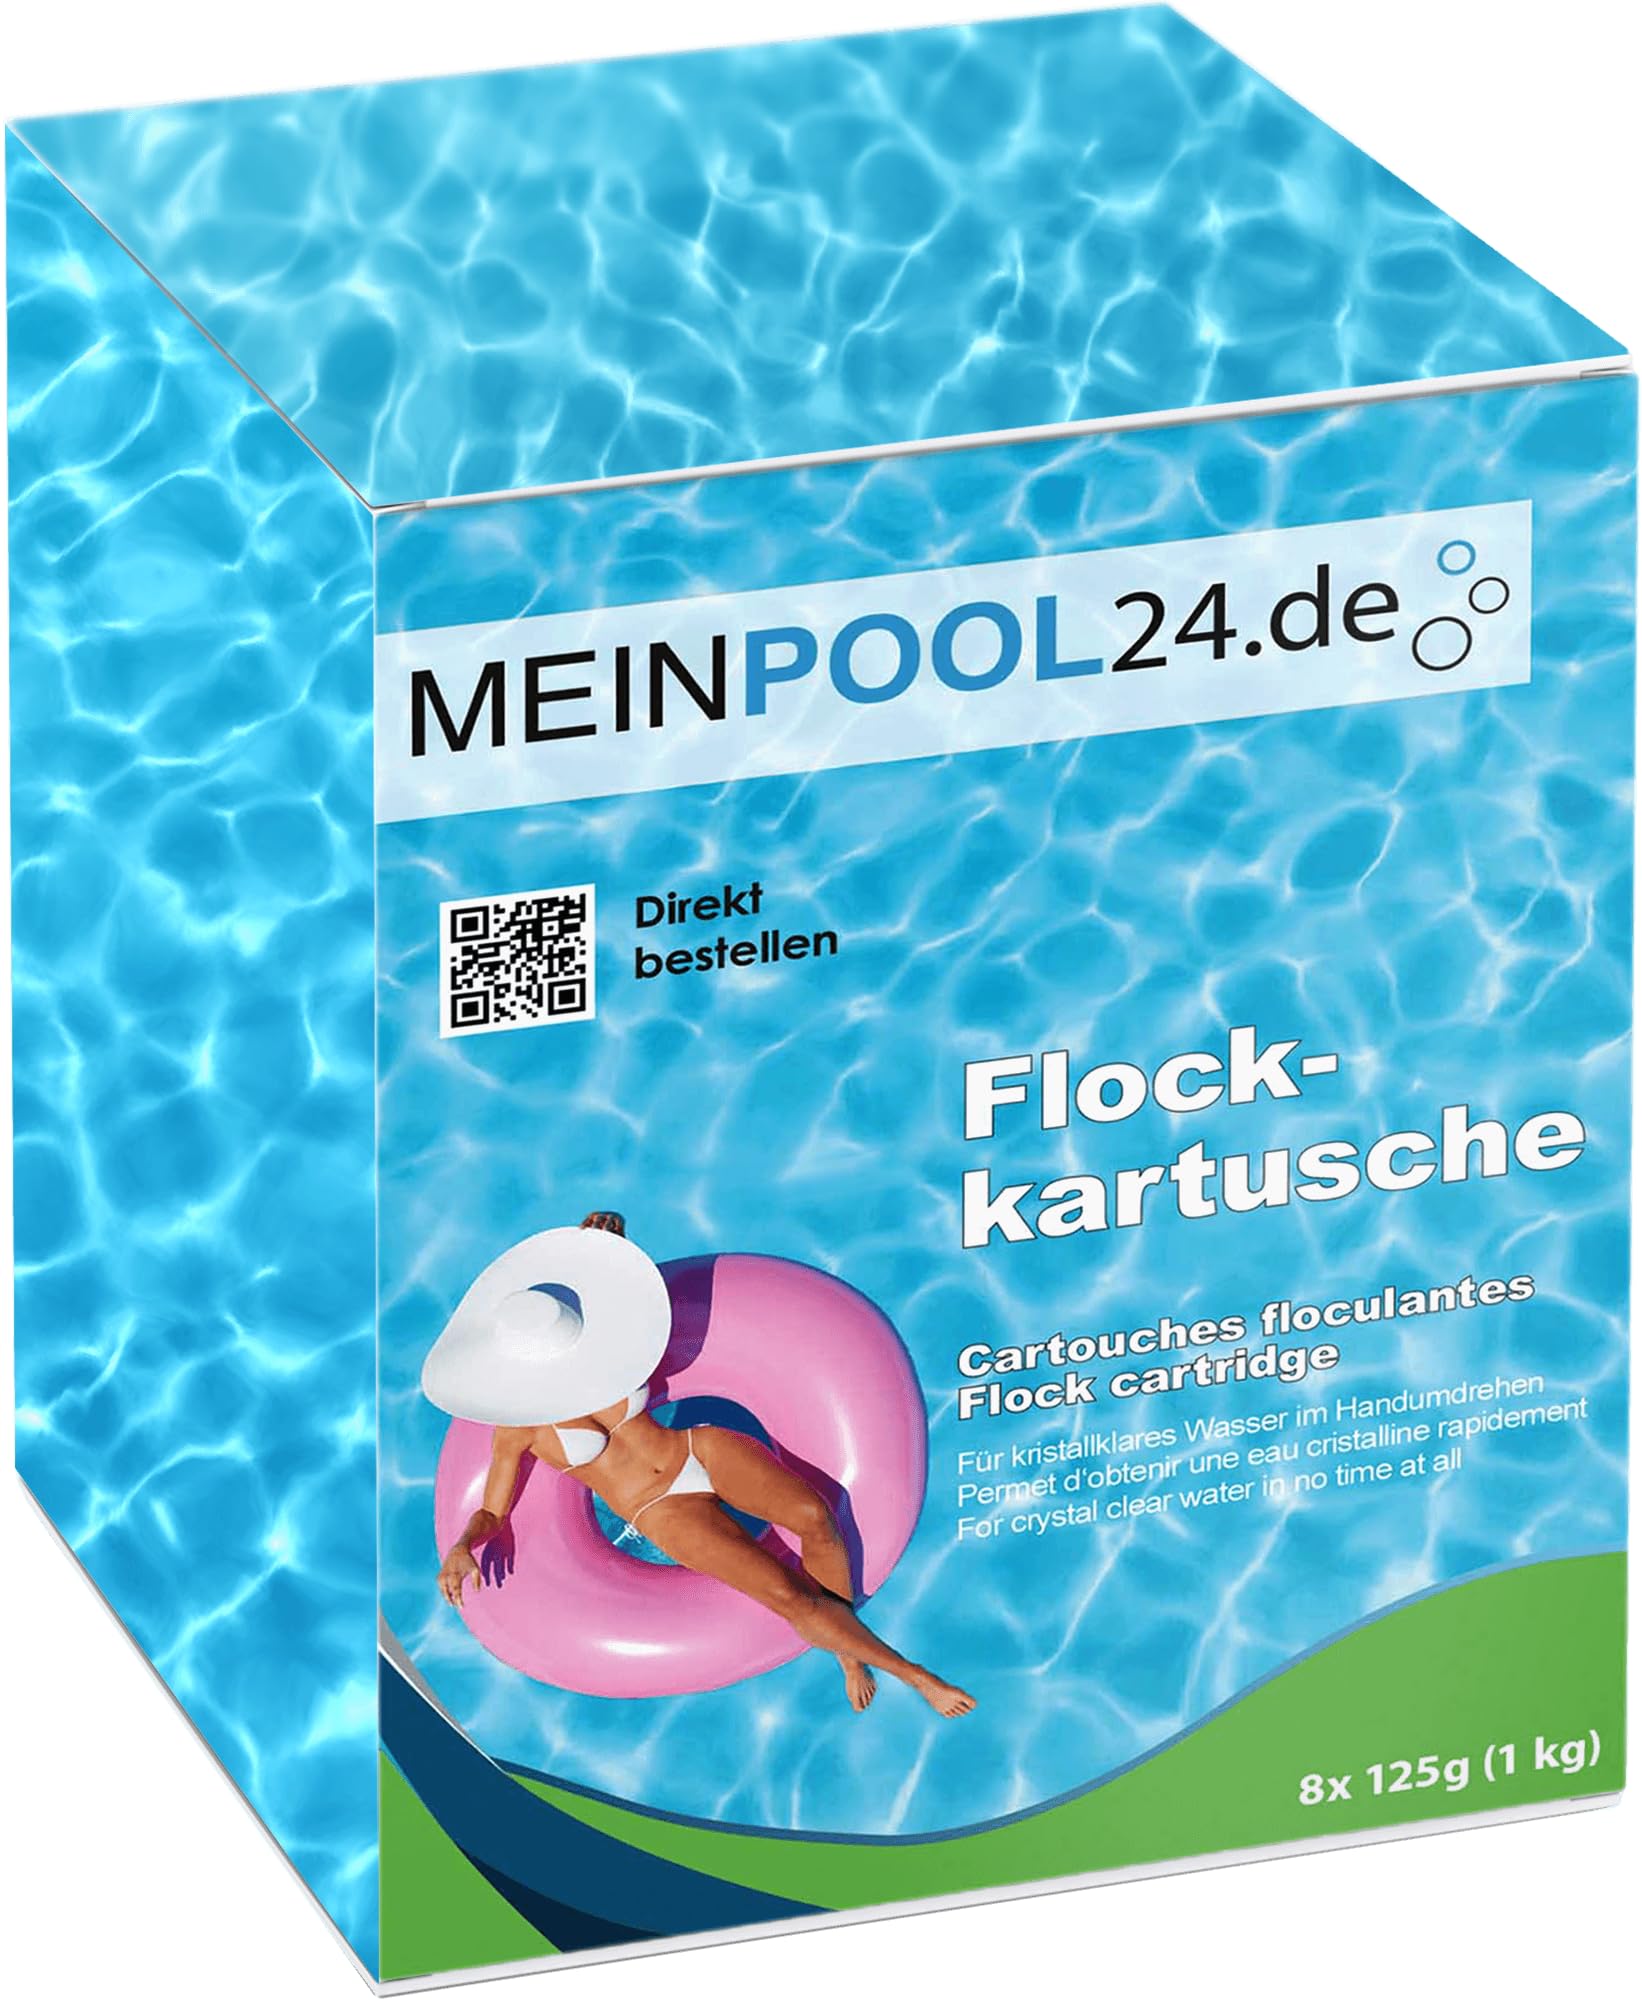 Meinpool24.de 5x1 kg Flockkartuschen Flockungs-Kartuschen für kristallklares Wasser entfernt feinste Schmutzteilchen im Pool